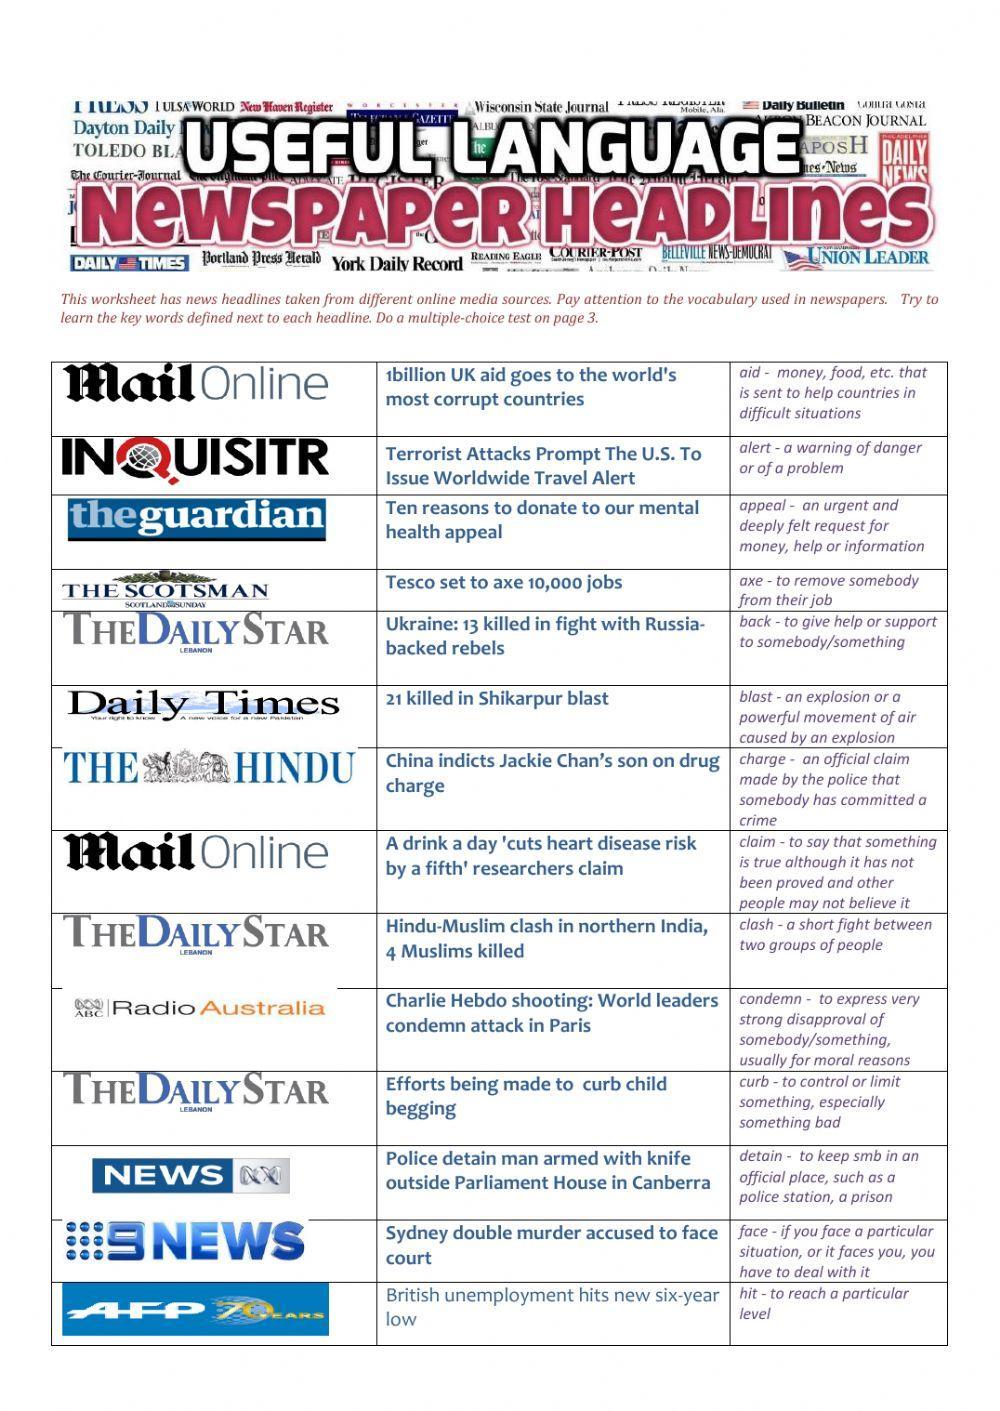 NEWSPAPER HEADLINES - Useful Language